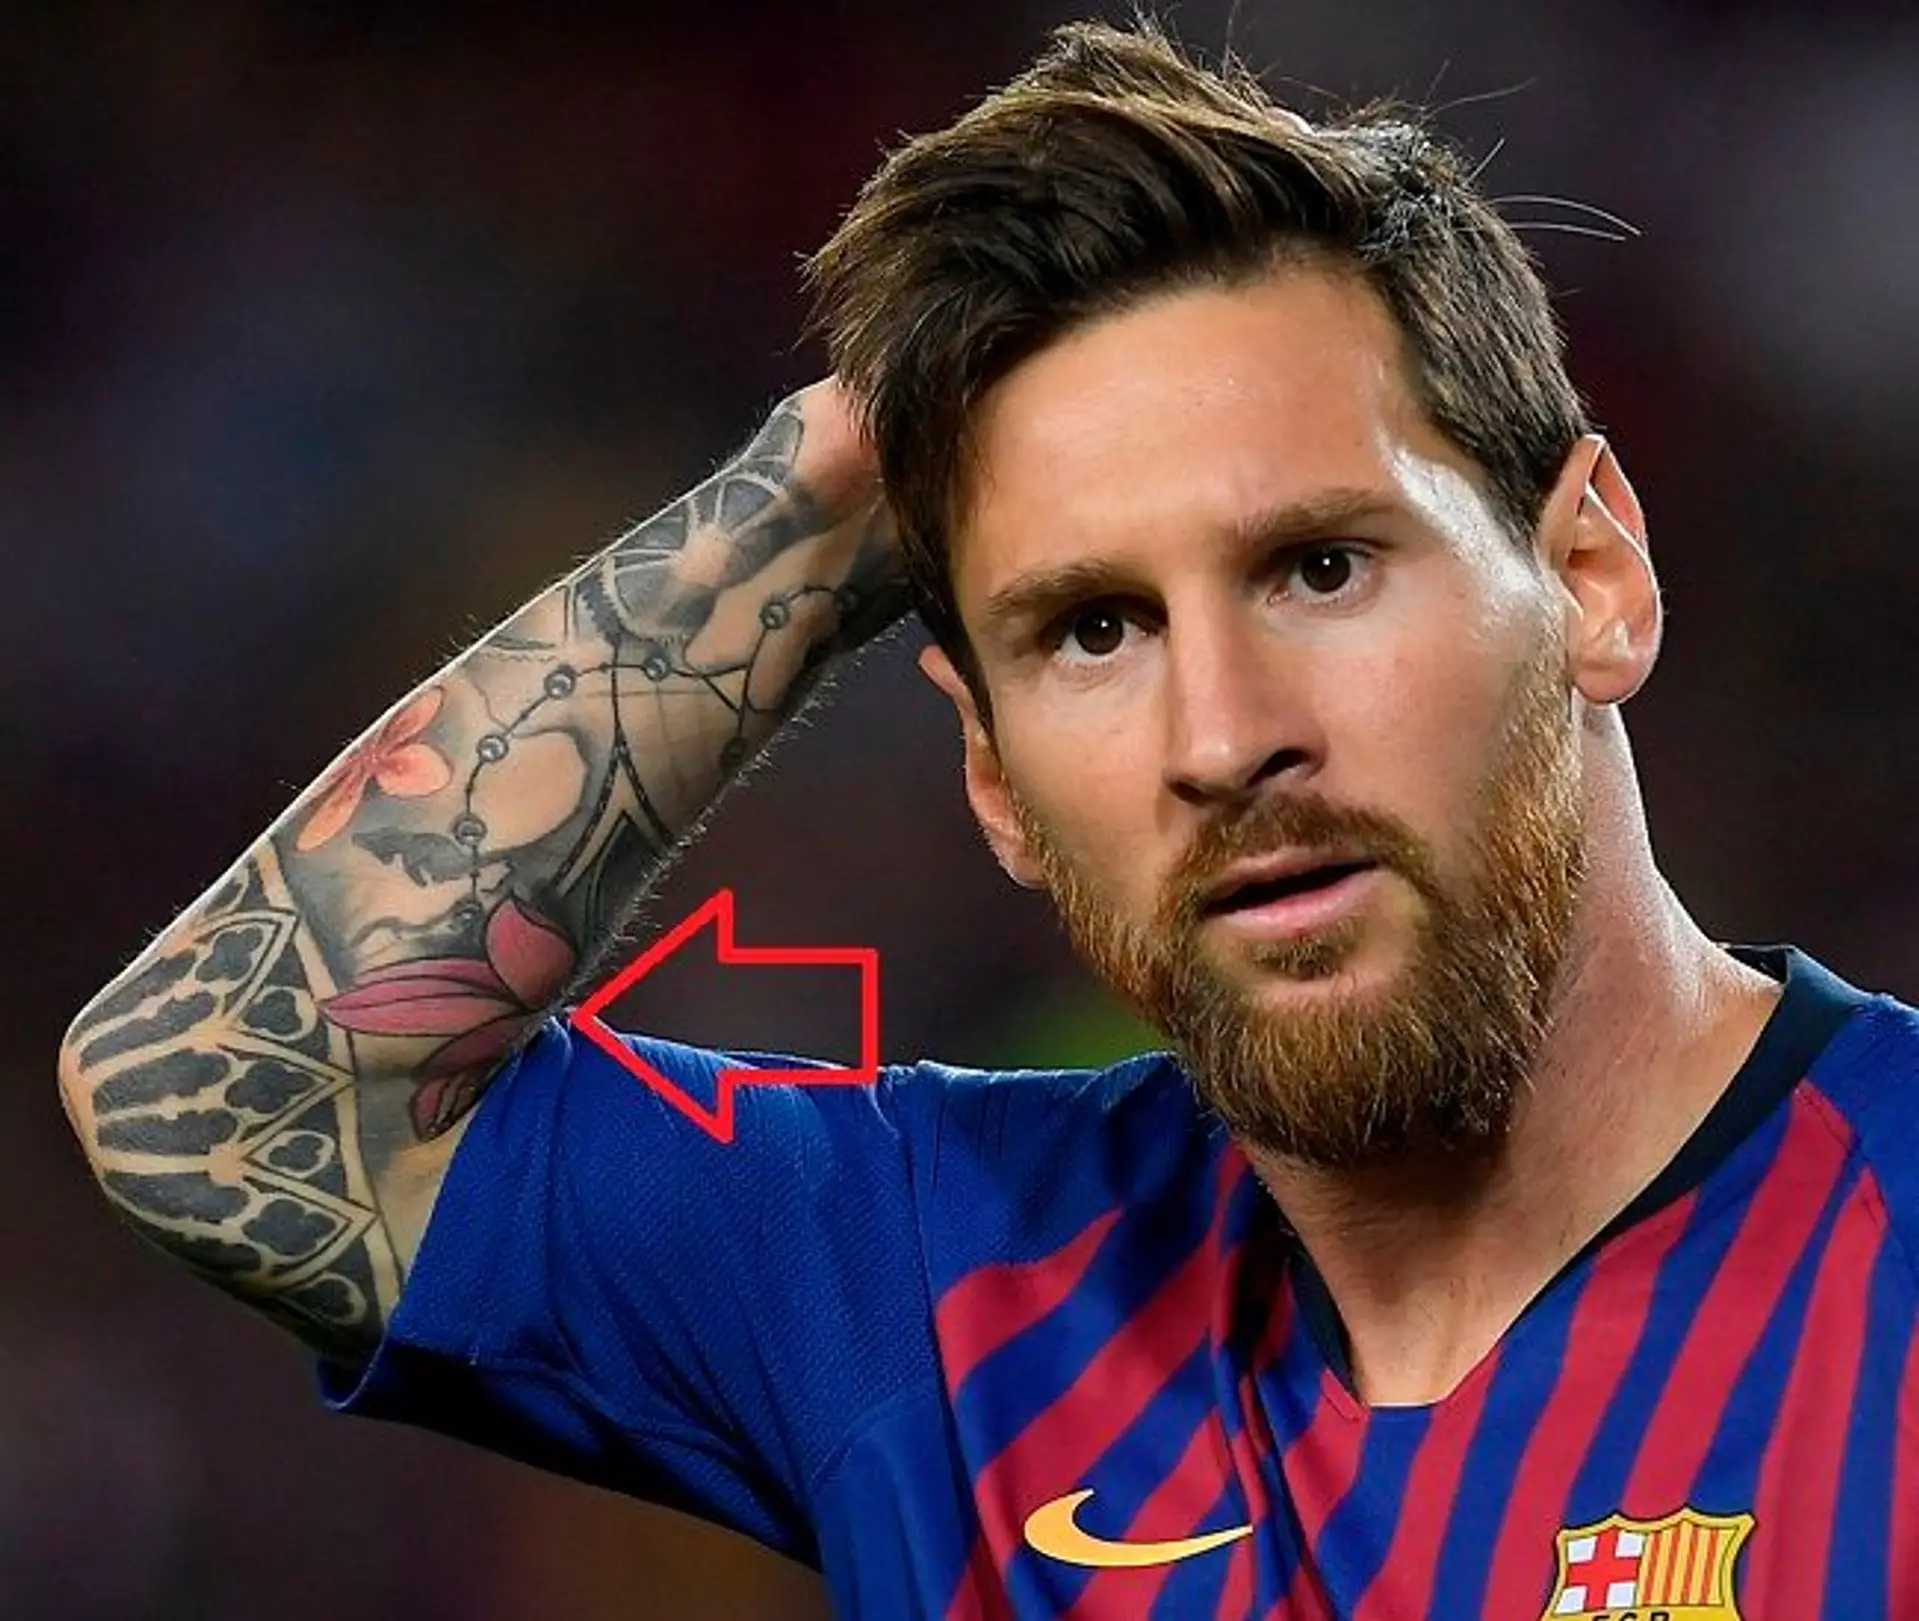 Leo Messi không chỉ là một cầu thủ xuất sắc, mà còn là người có gu thẩm mỹ tuyệt vời. Hãy ngắm nhìn bộ sưu tập hình xăm của anh để thấy được tài năng đa năng của Messi.